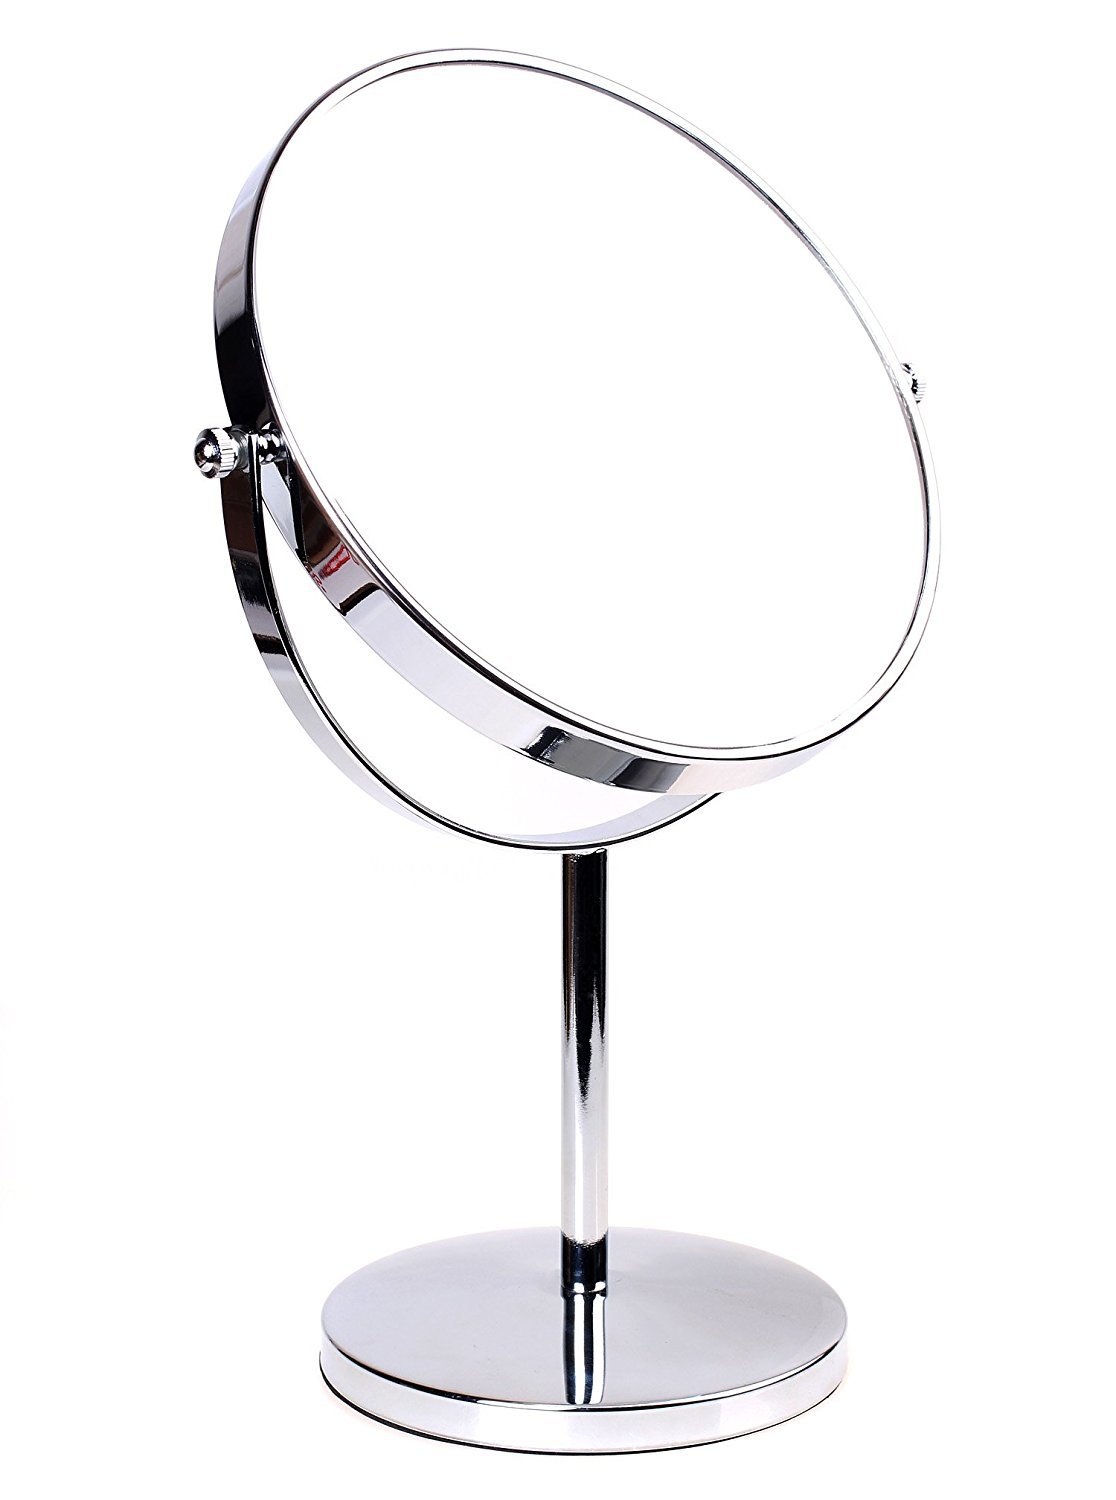 HIMRY Standspiegel 5X Vergrößerung, 8 inch, Kosmetikspiegel 360° drehbar. Verchromten Schminkspiegel Rasierspiegel Badzimmerspiegel, Zweiseitig: Normal+ 5fach Vergrößerung, KXD3108-5x